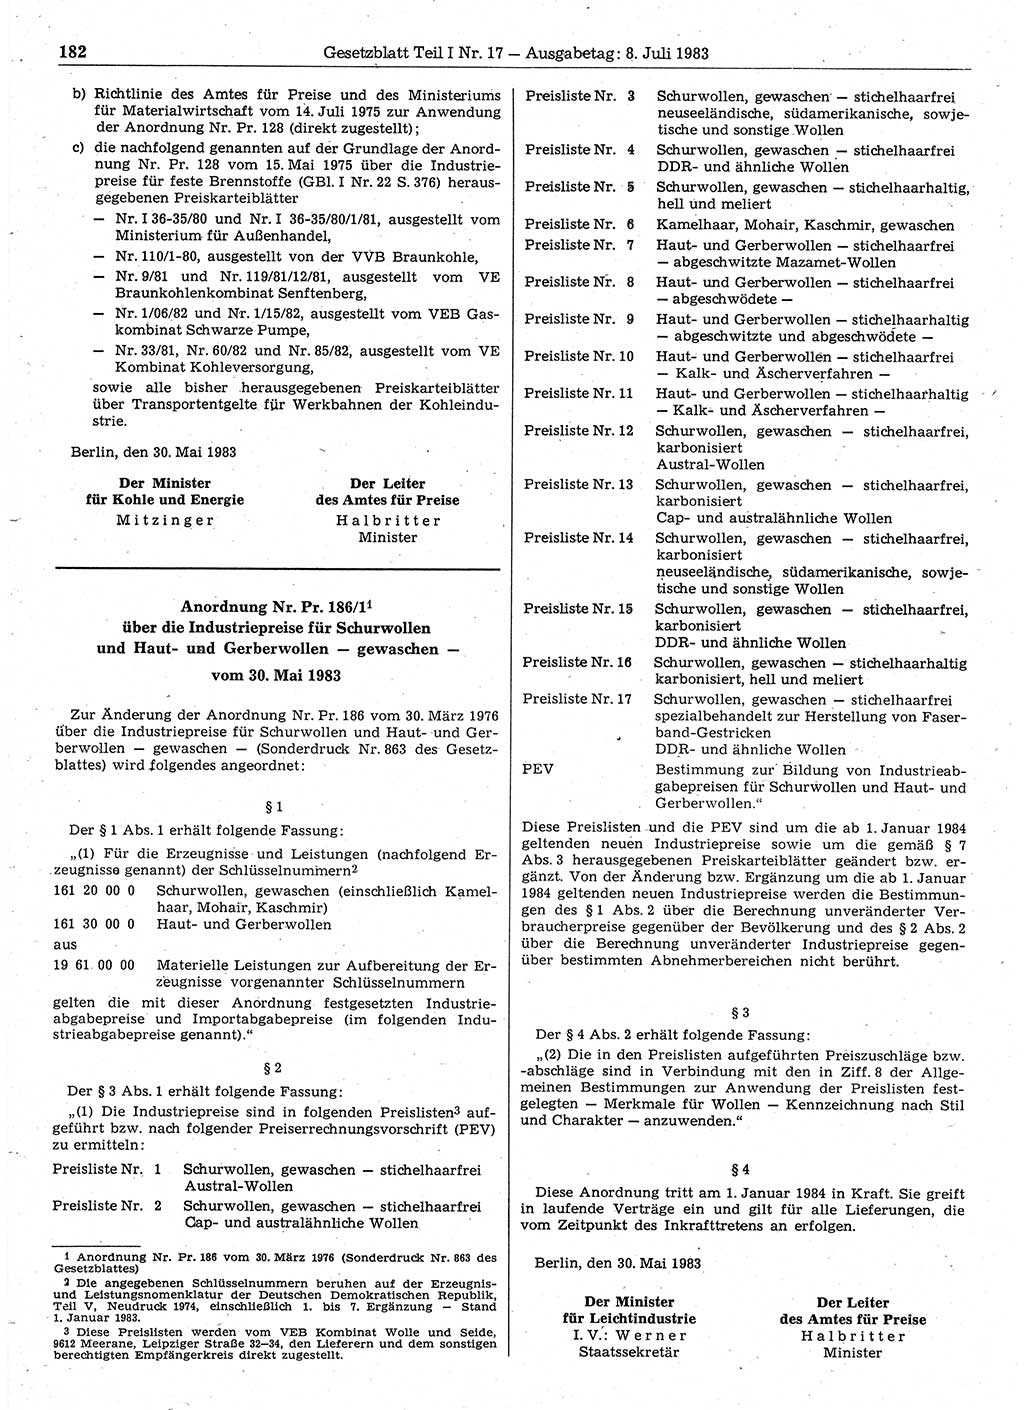 Gesetzblatt (GBl.) der Deutschen Demokratischen Republik (DDR) Teil Ⅰ 1983, Seite 182 (GBl. DDR Ⅰ 1983, S. 182)